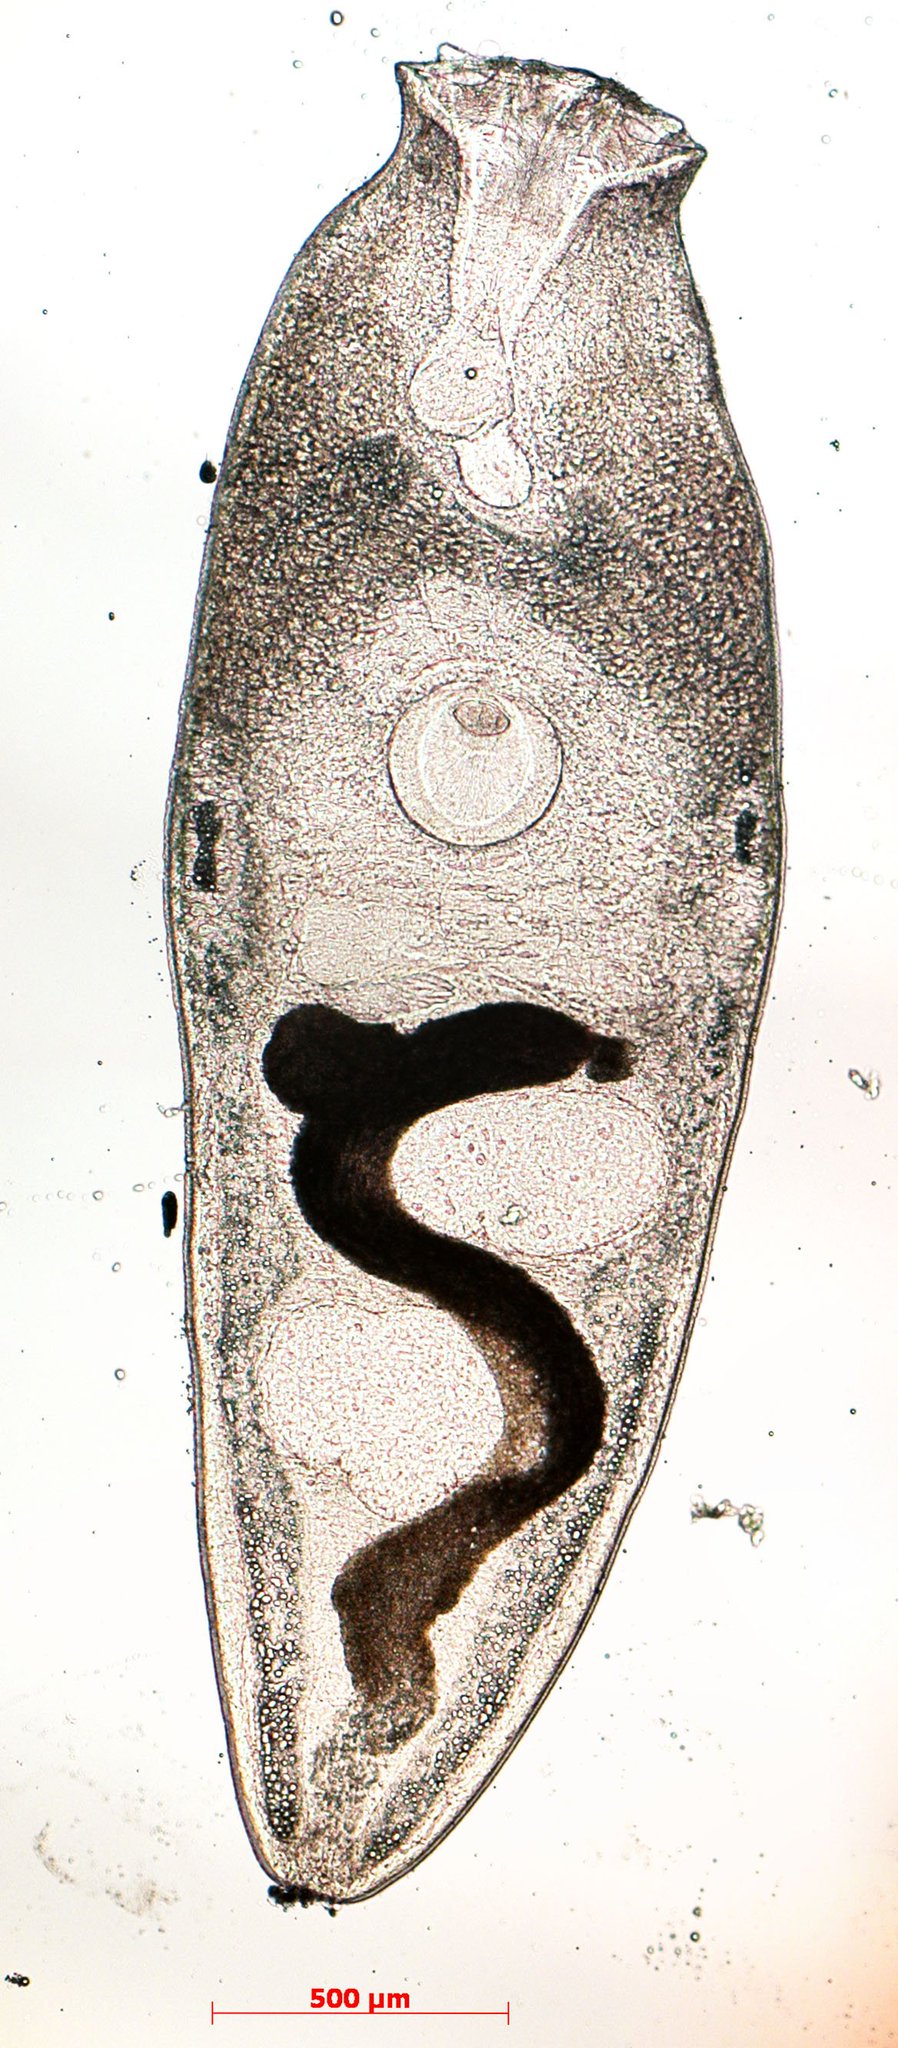 旭川医大寄生虫学講座 この黒い粒の中に住んでいるのは Liliatrema属吸虫の幼生です 一般的な口吸盤と異なり ラッパみたいな形をしているのが特徴 ちなみにヒトが食べても問題ありません